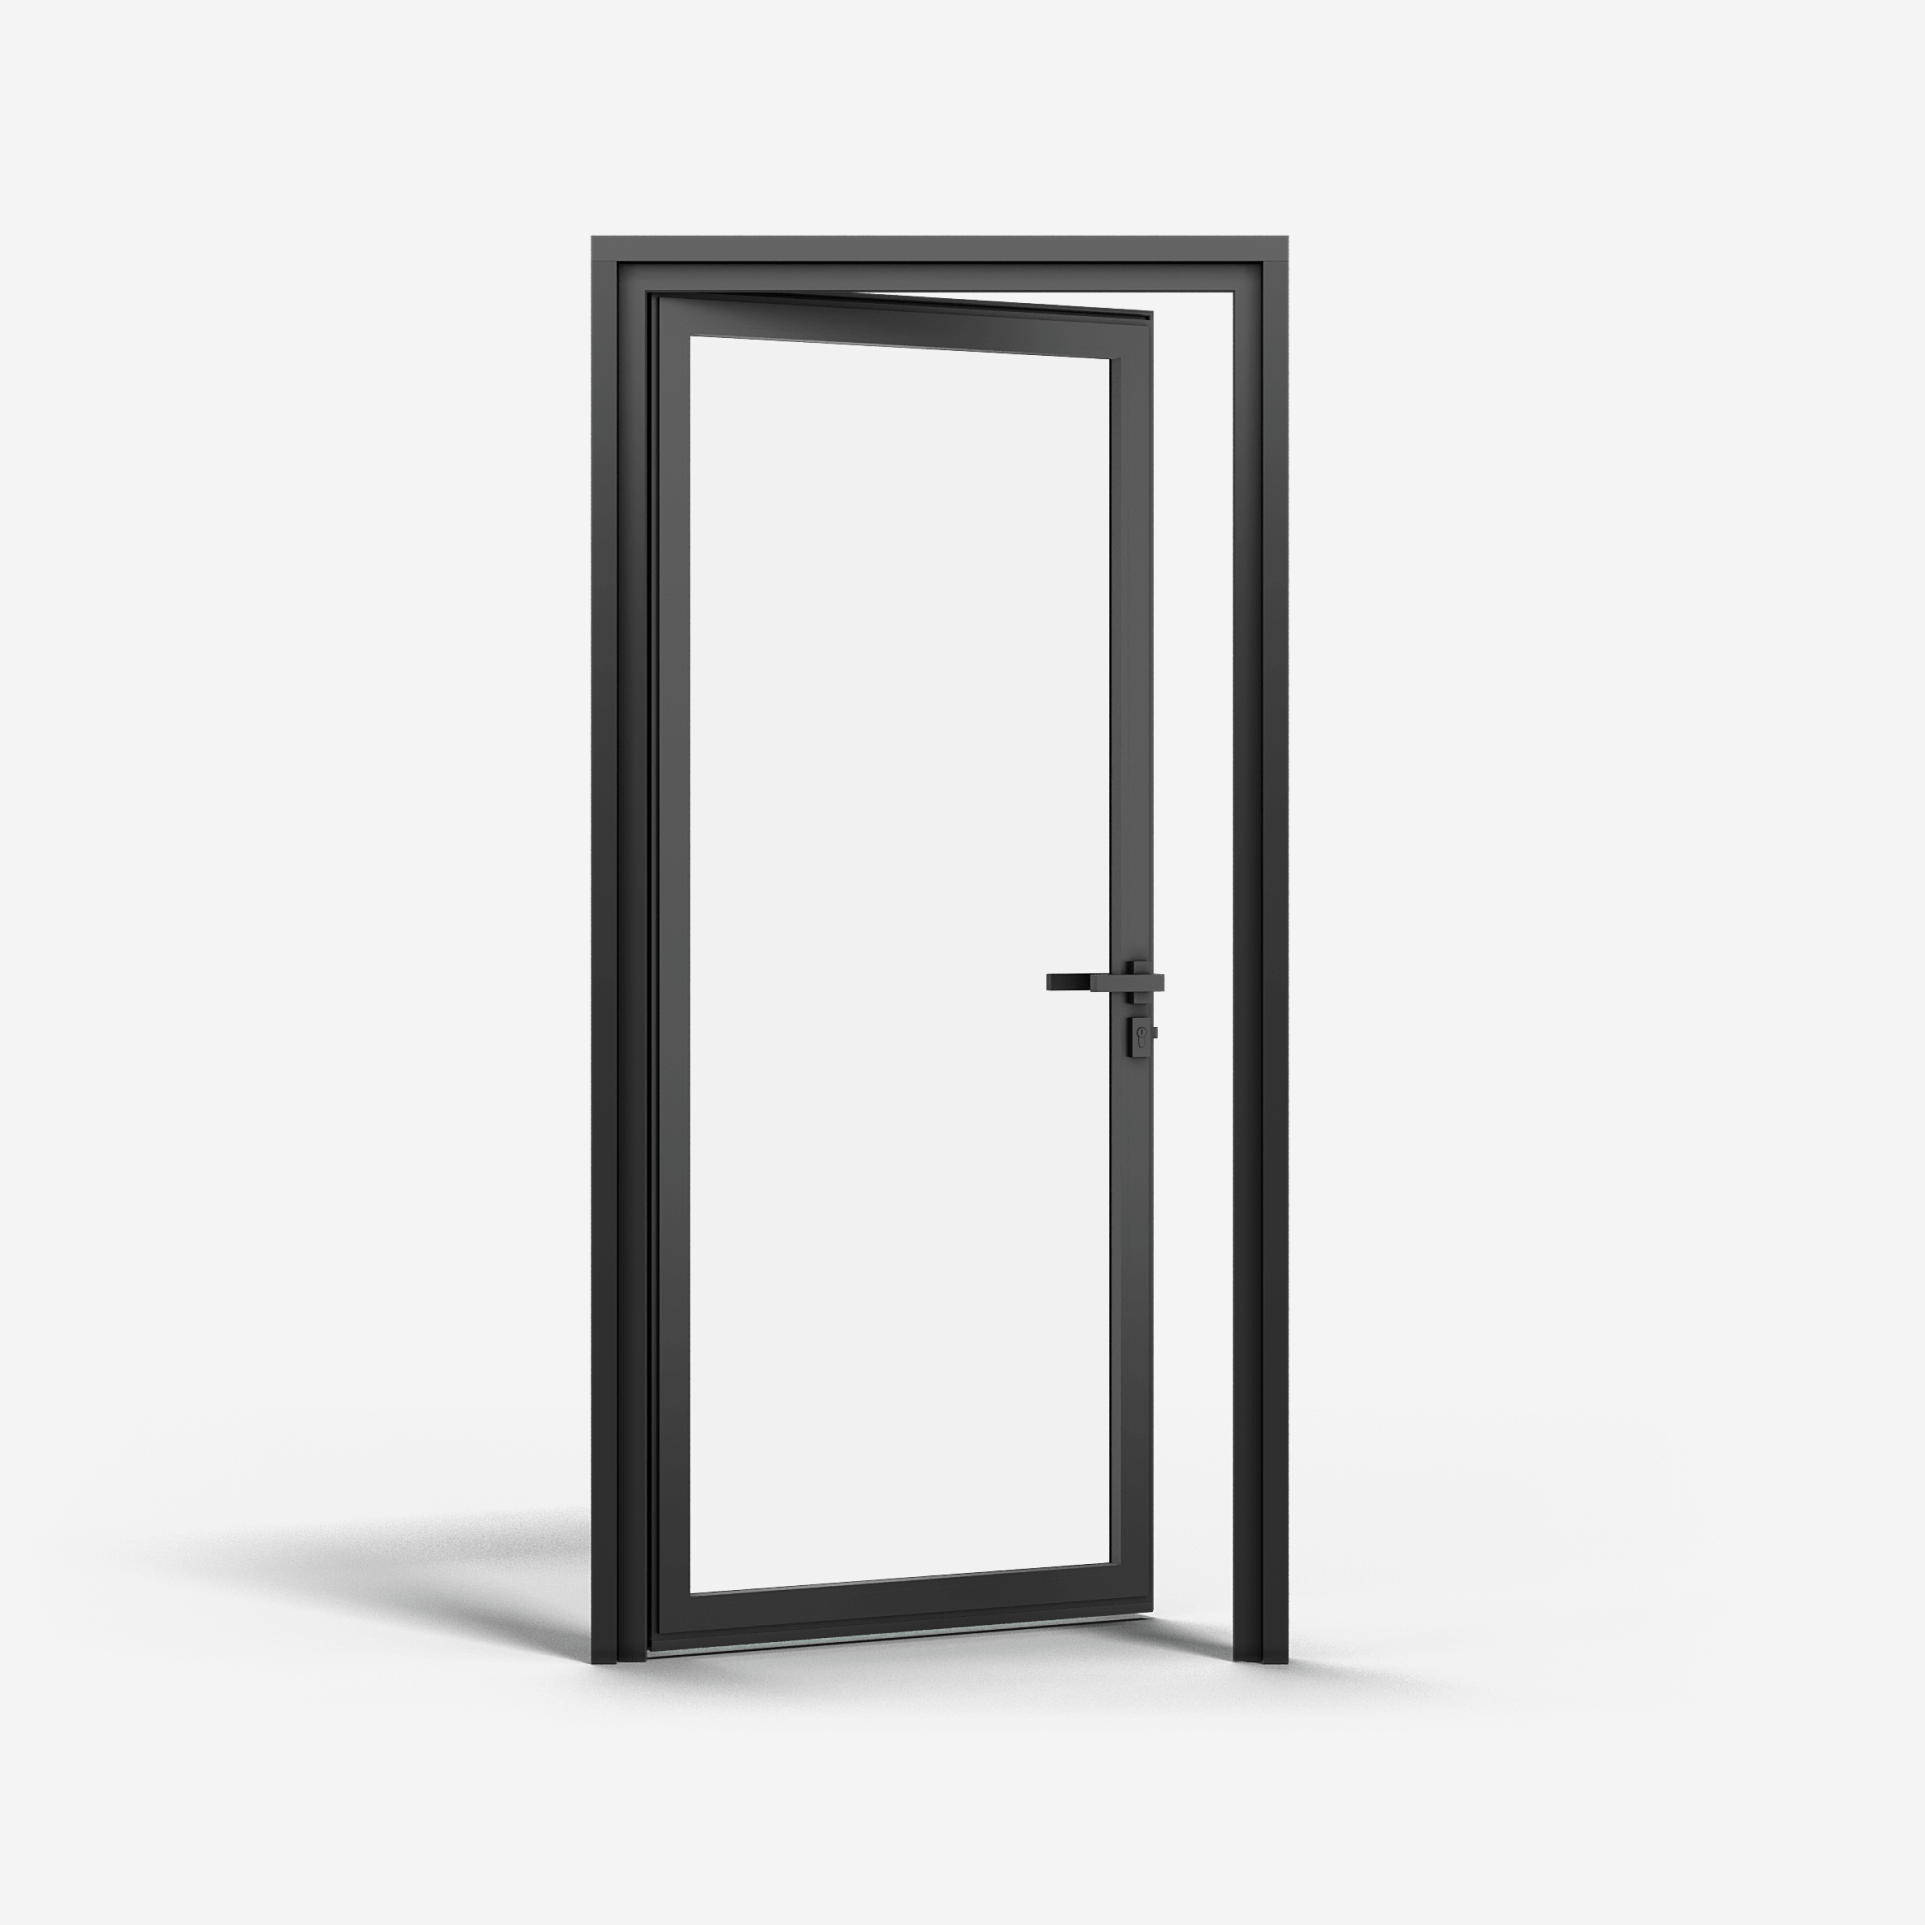 KOMPAS Aluminum Framed Single Swing Door - LH In